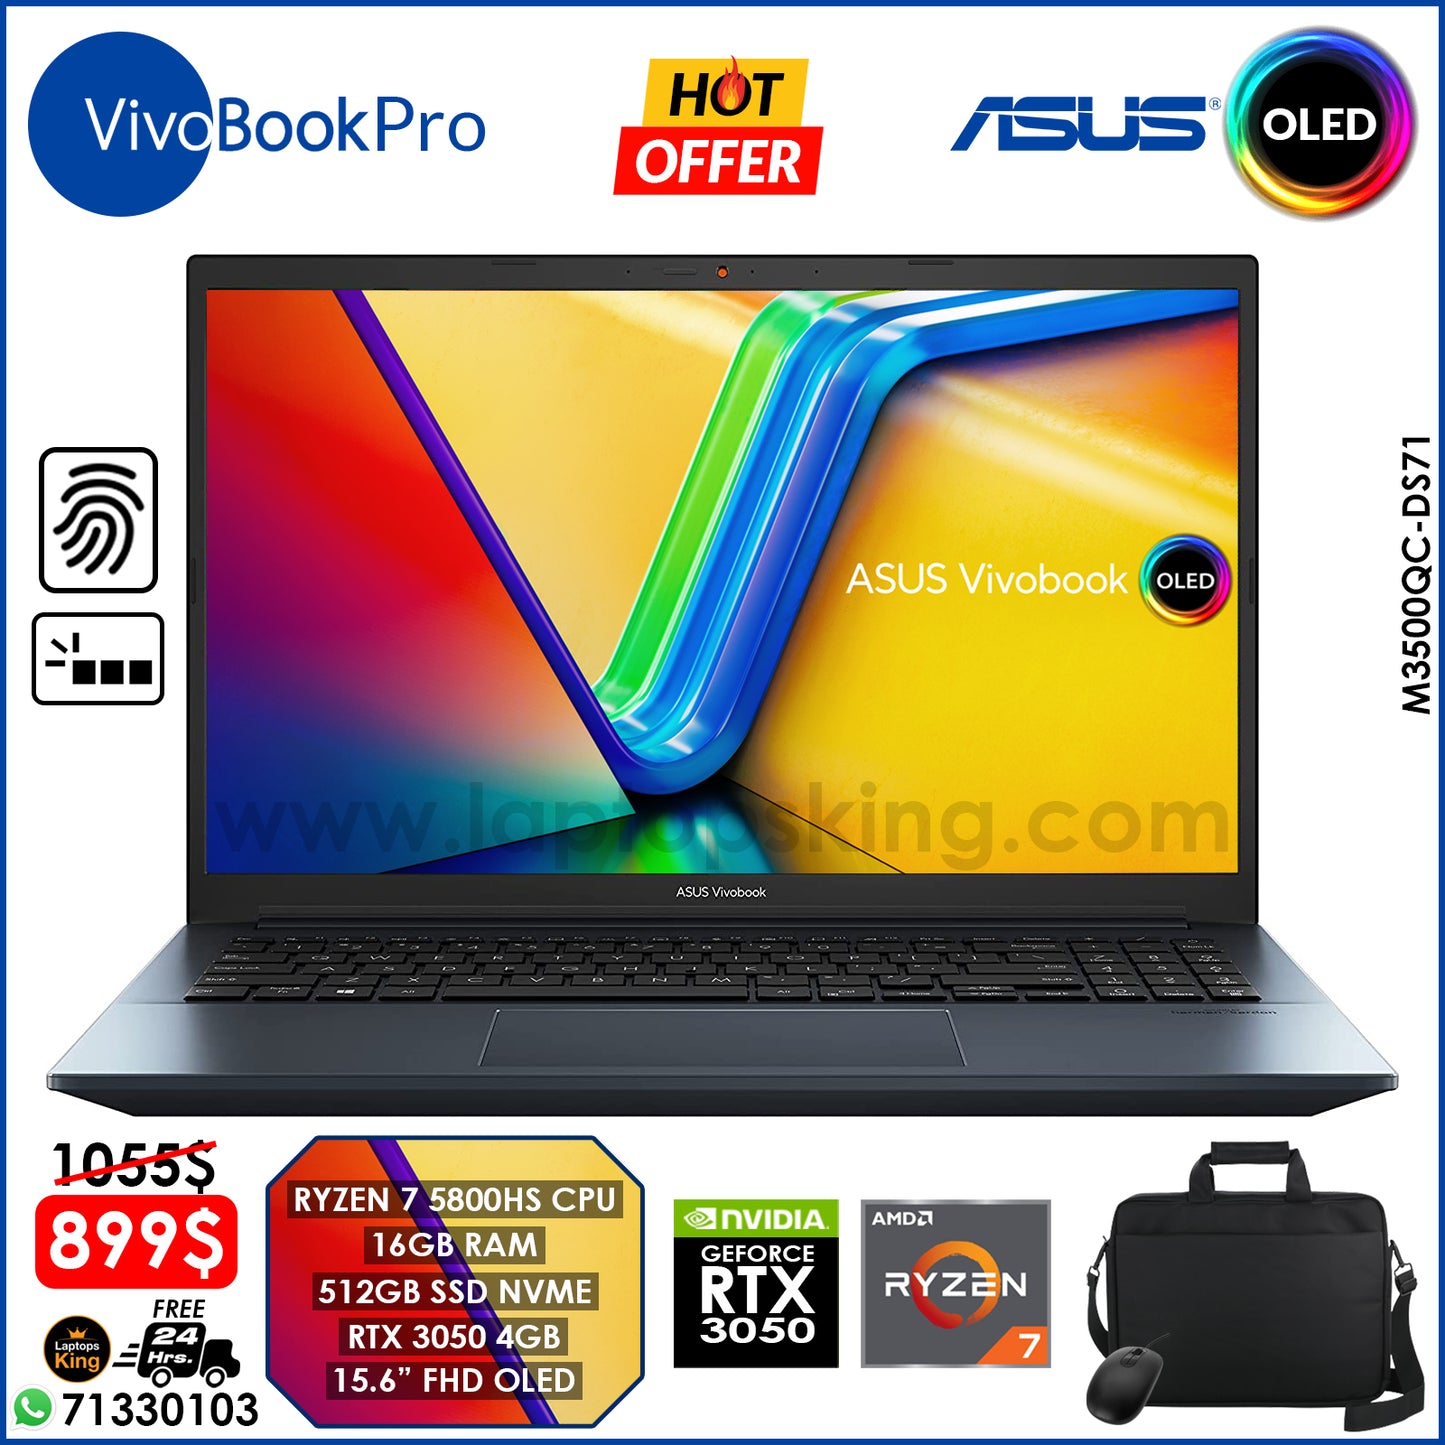 Asus VivoBook Pro Oled M3500QC-DS71 Ryzen 7 5800hs Rtx 3050 Laptop (New OB)